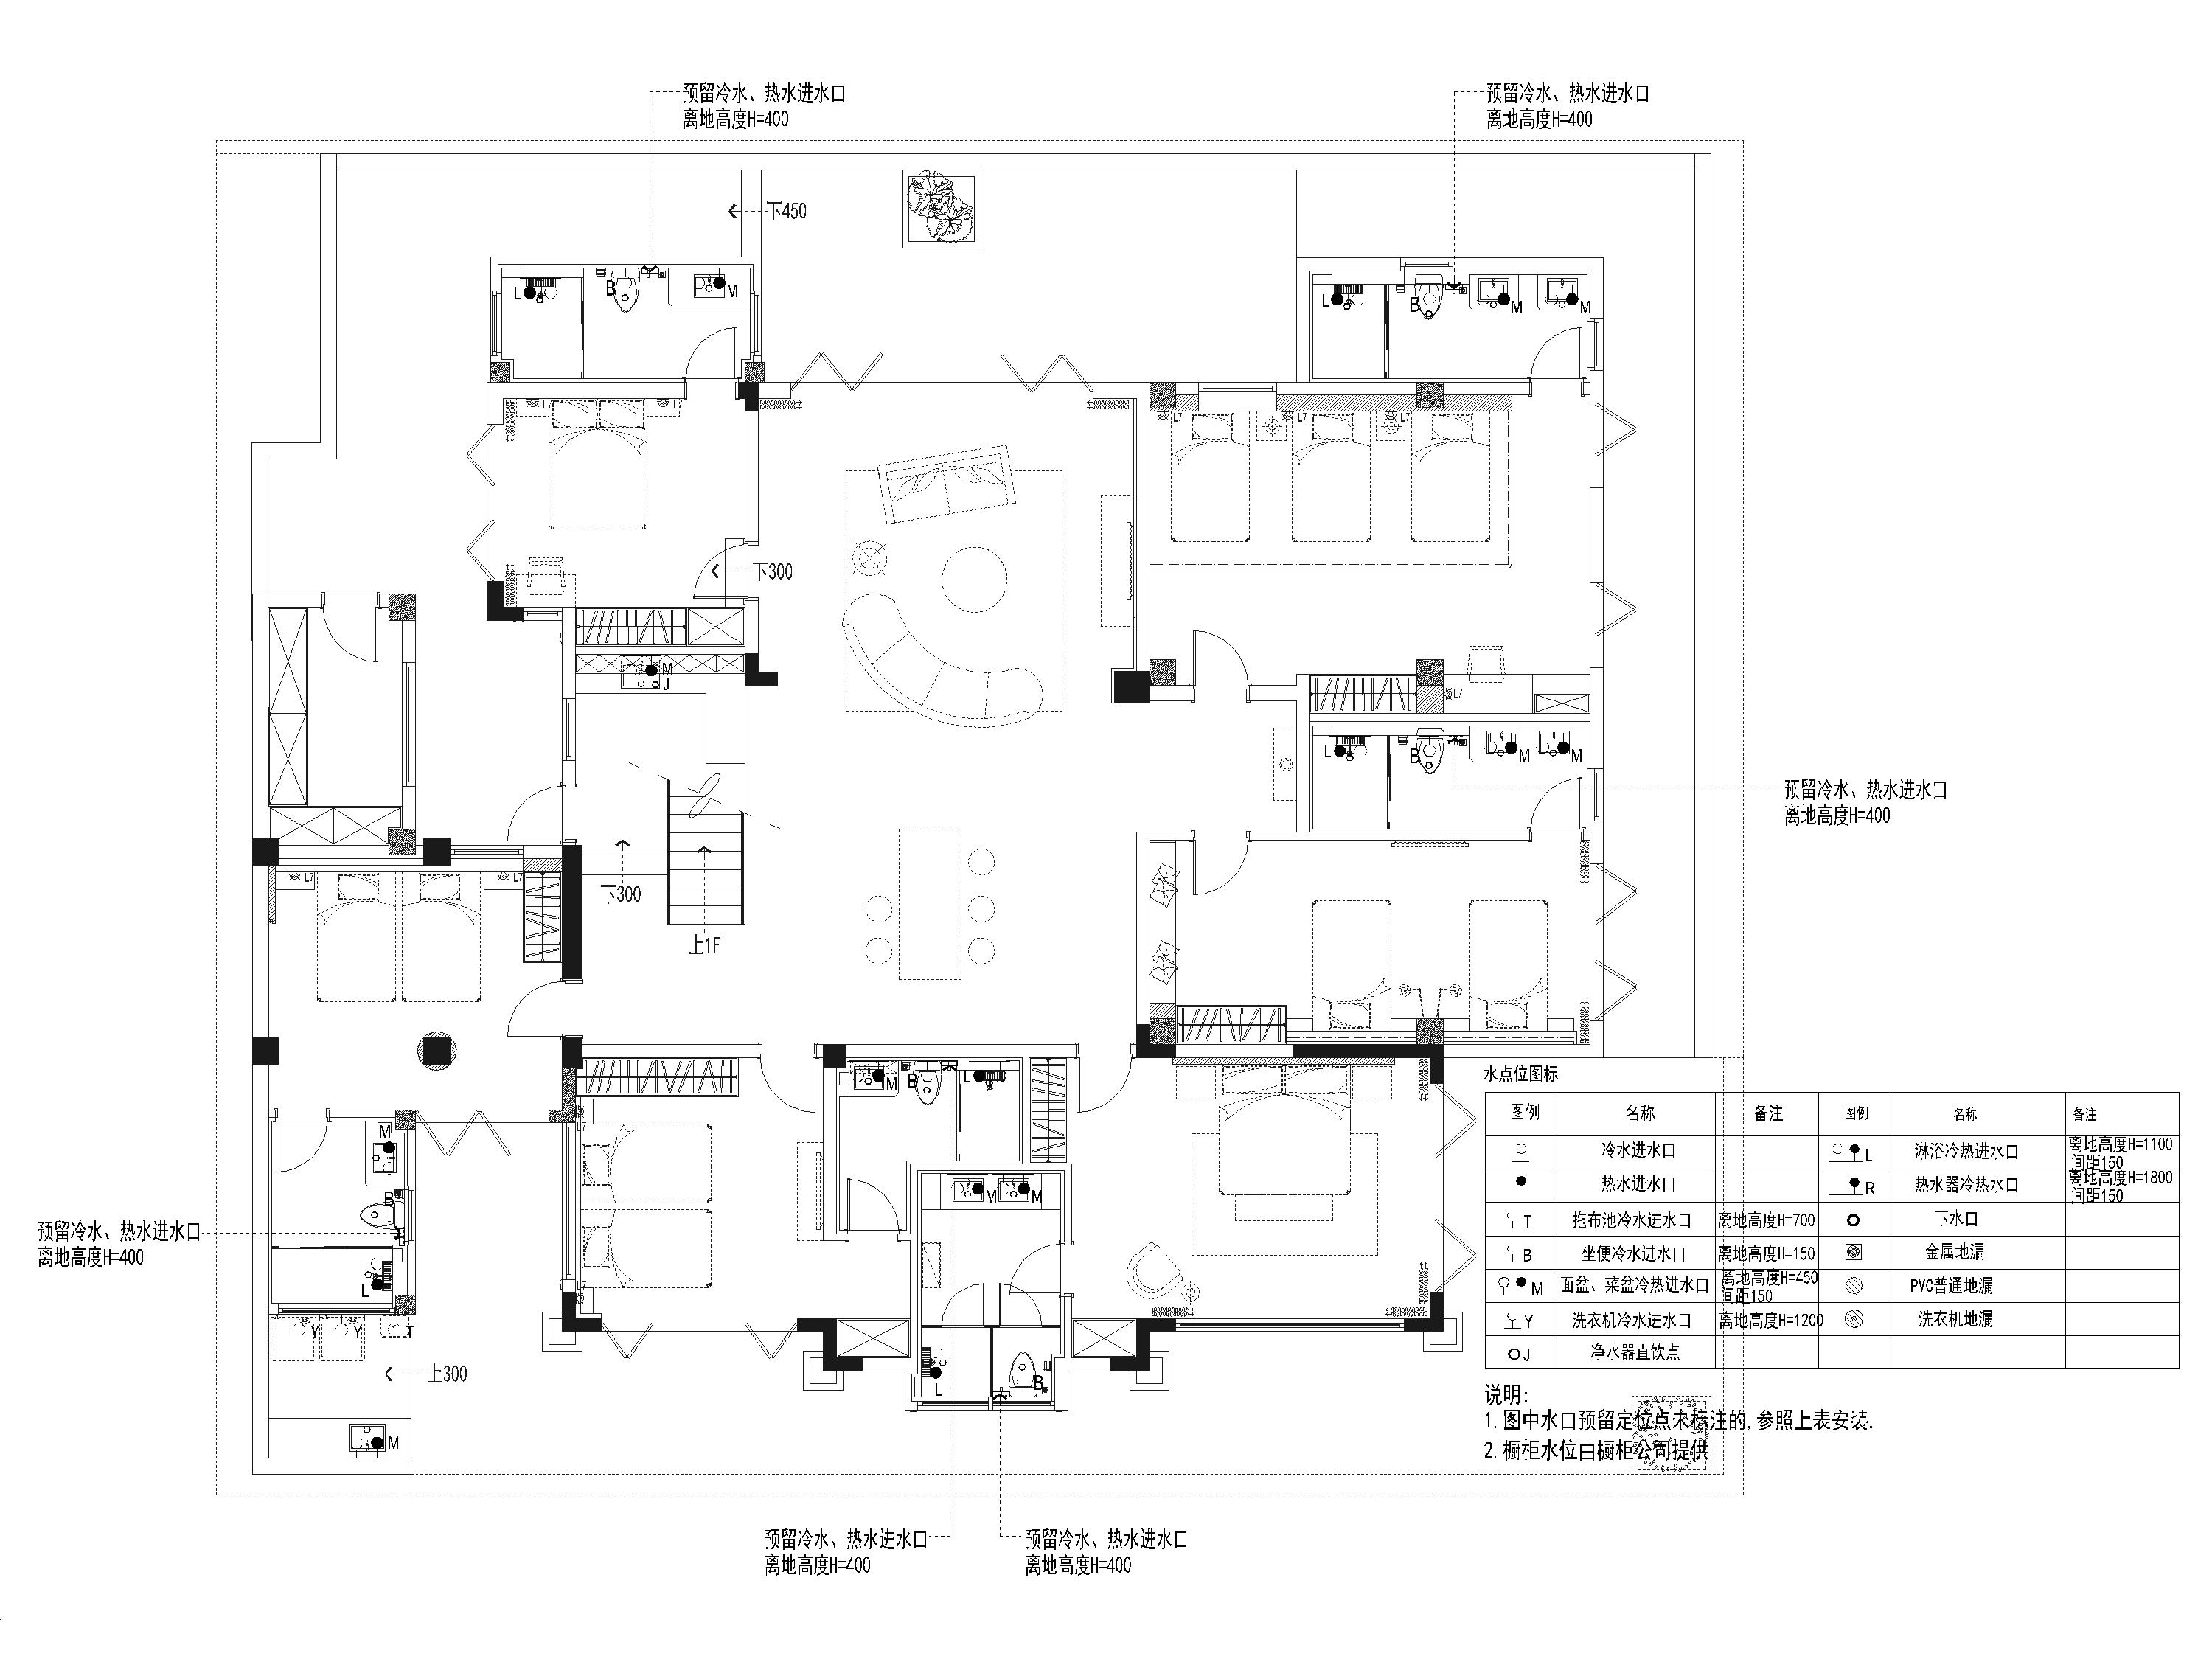 [海南]900m²六居别墅装修设计施工图+3D模型-负一层给排水布置图